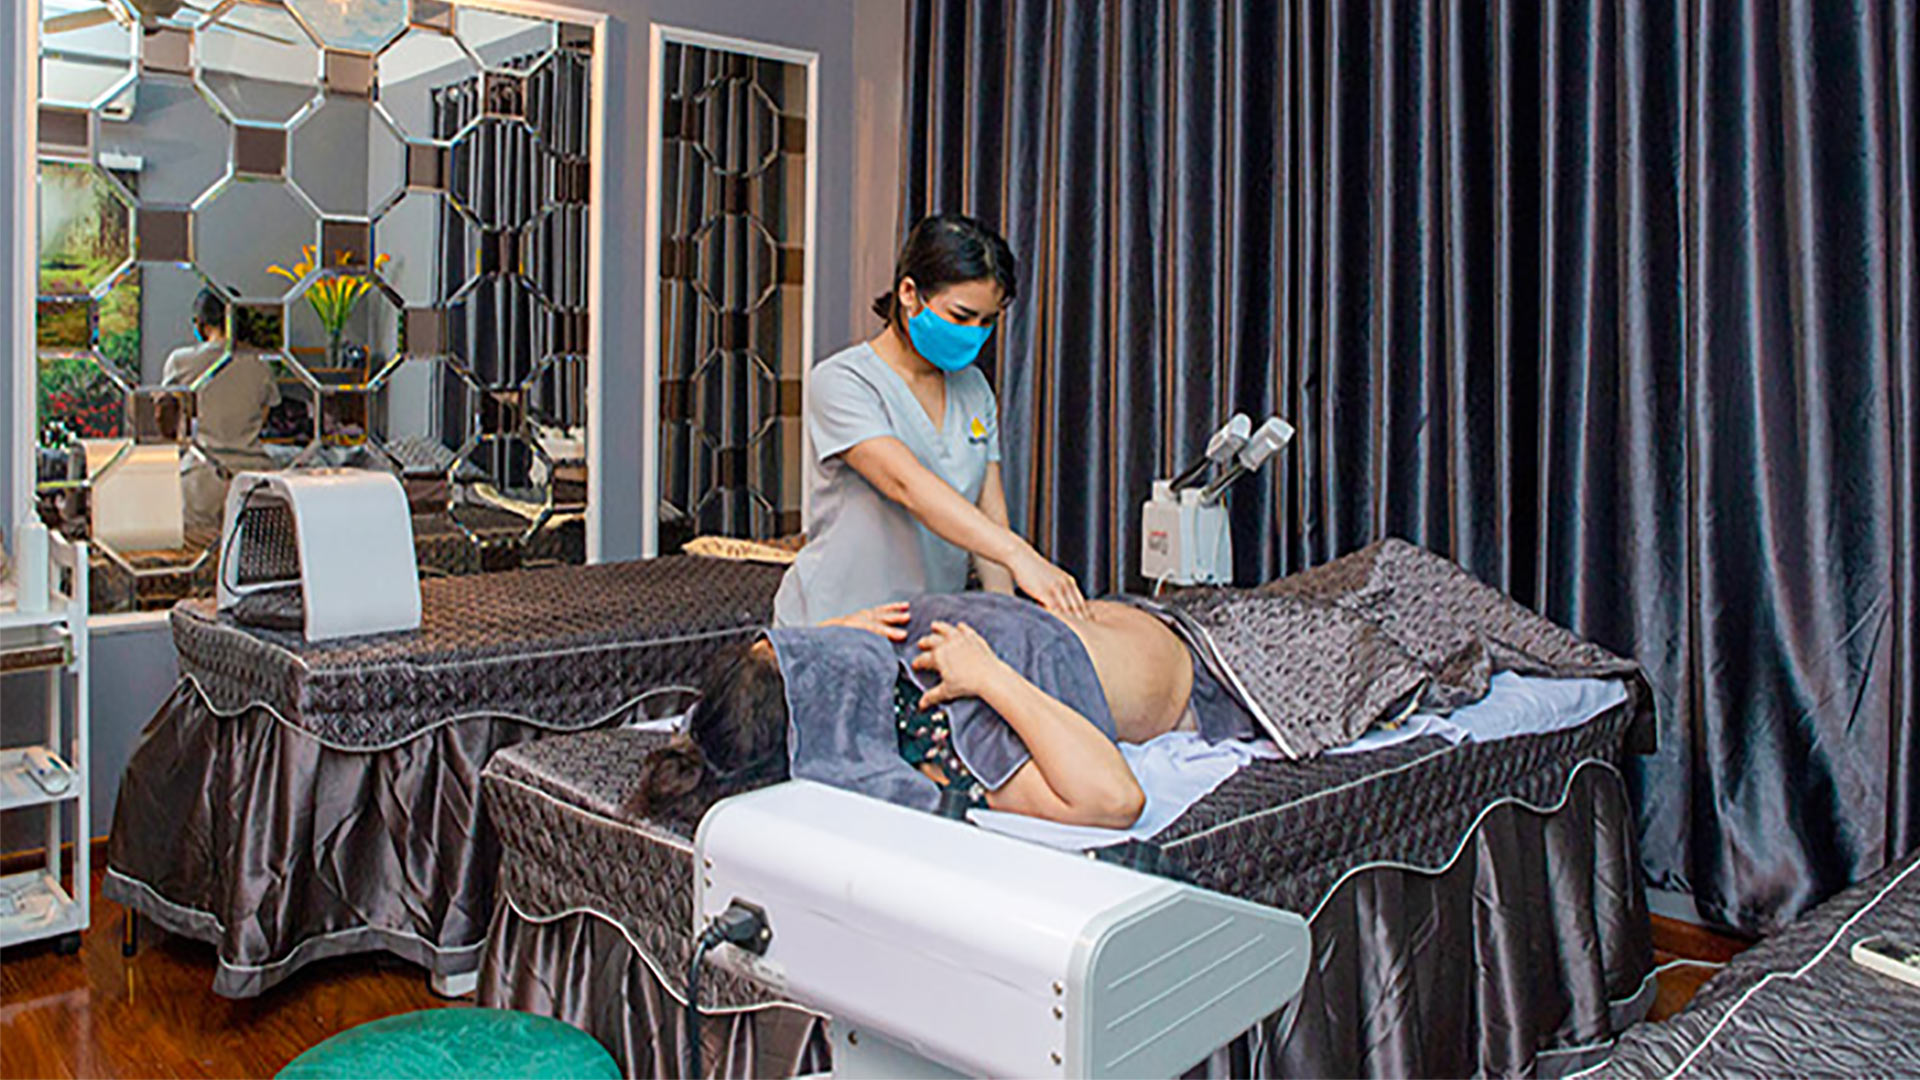 Massage thư giãn toàn thân tại Korea Spa chỉ  đồng khi có voucher  VinID